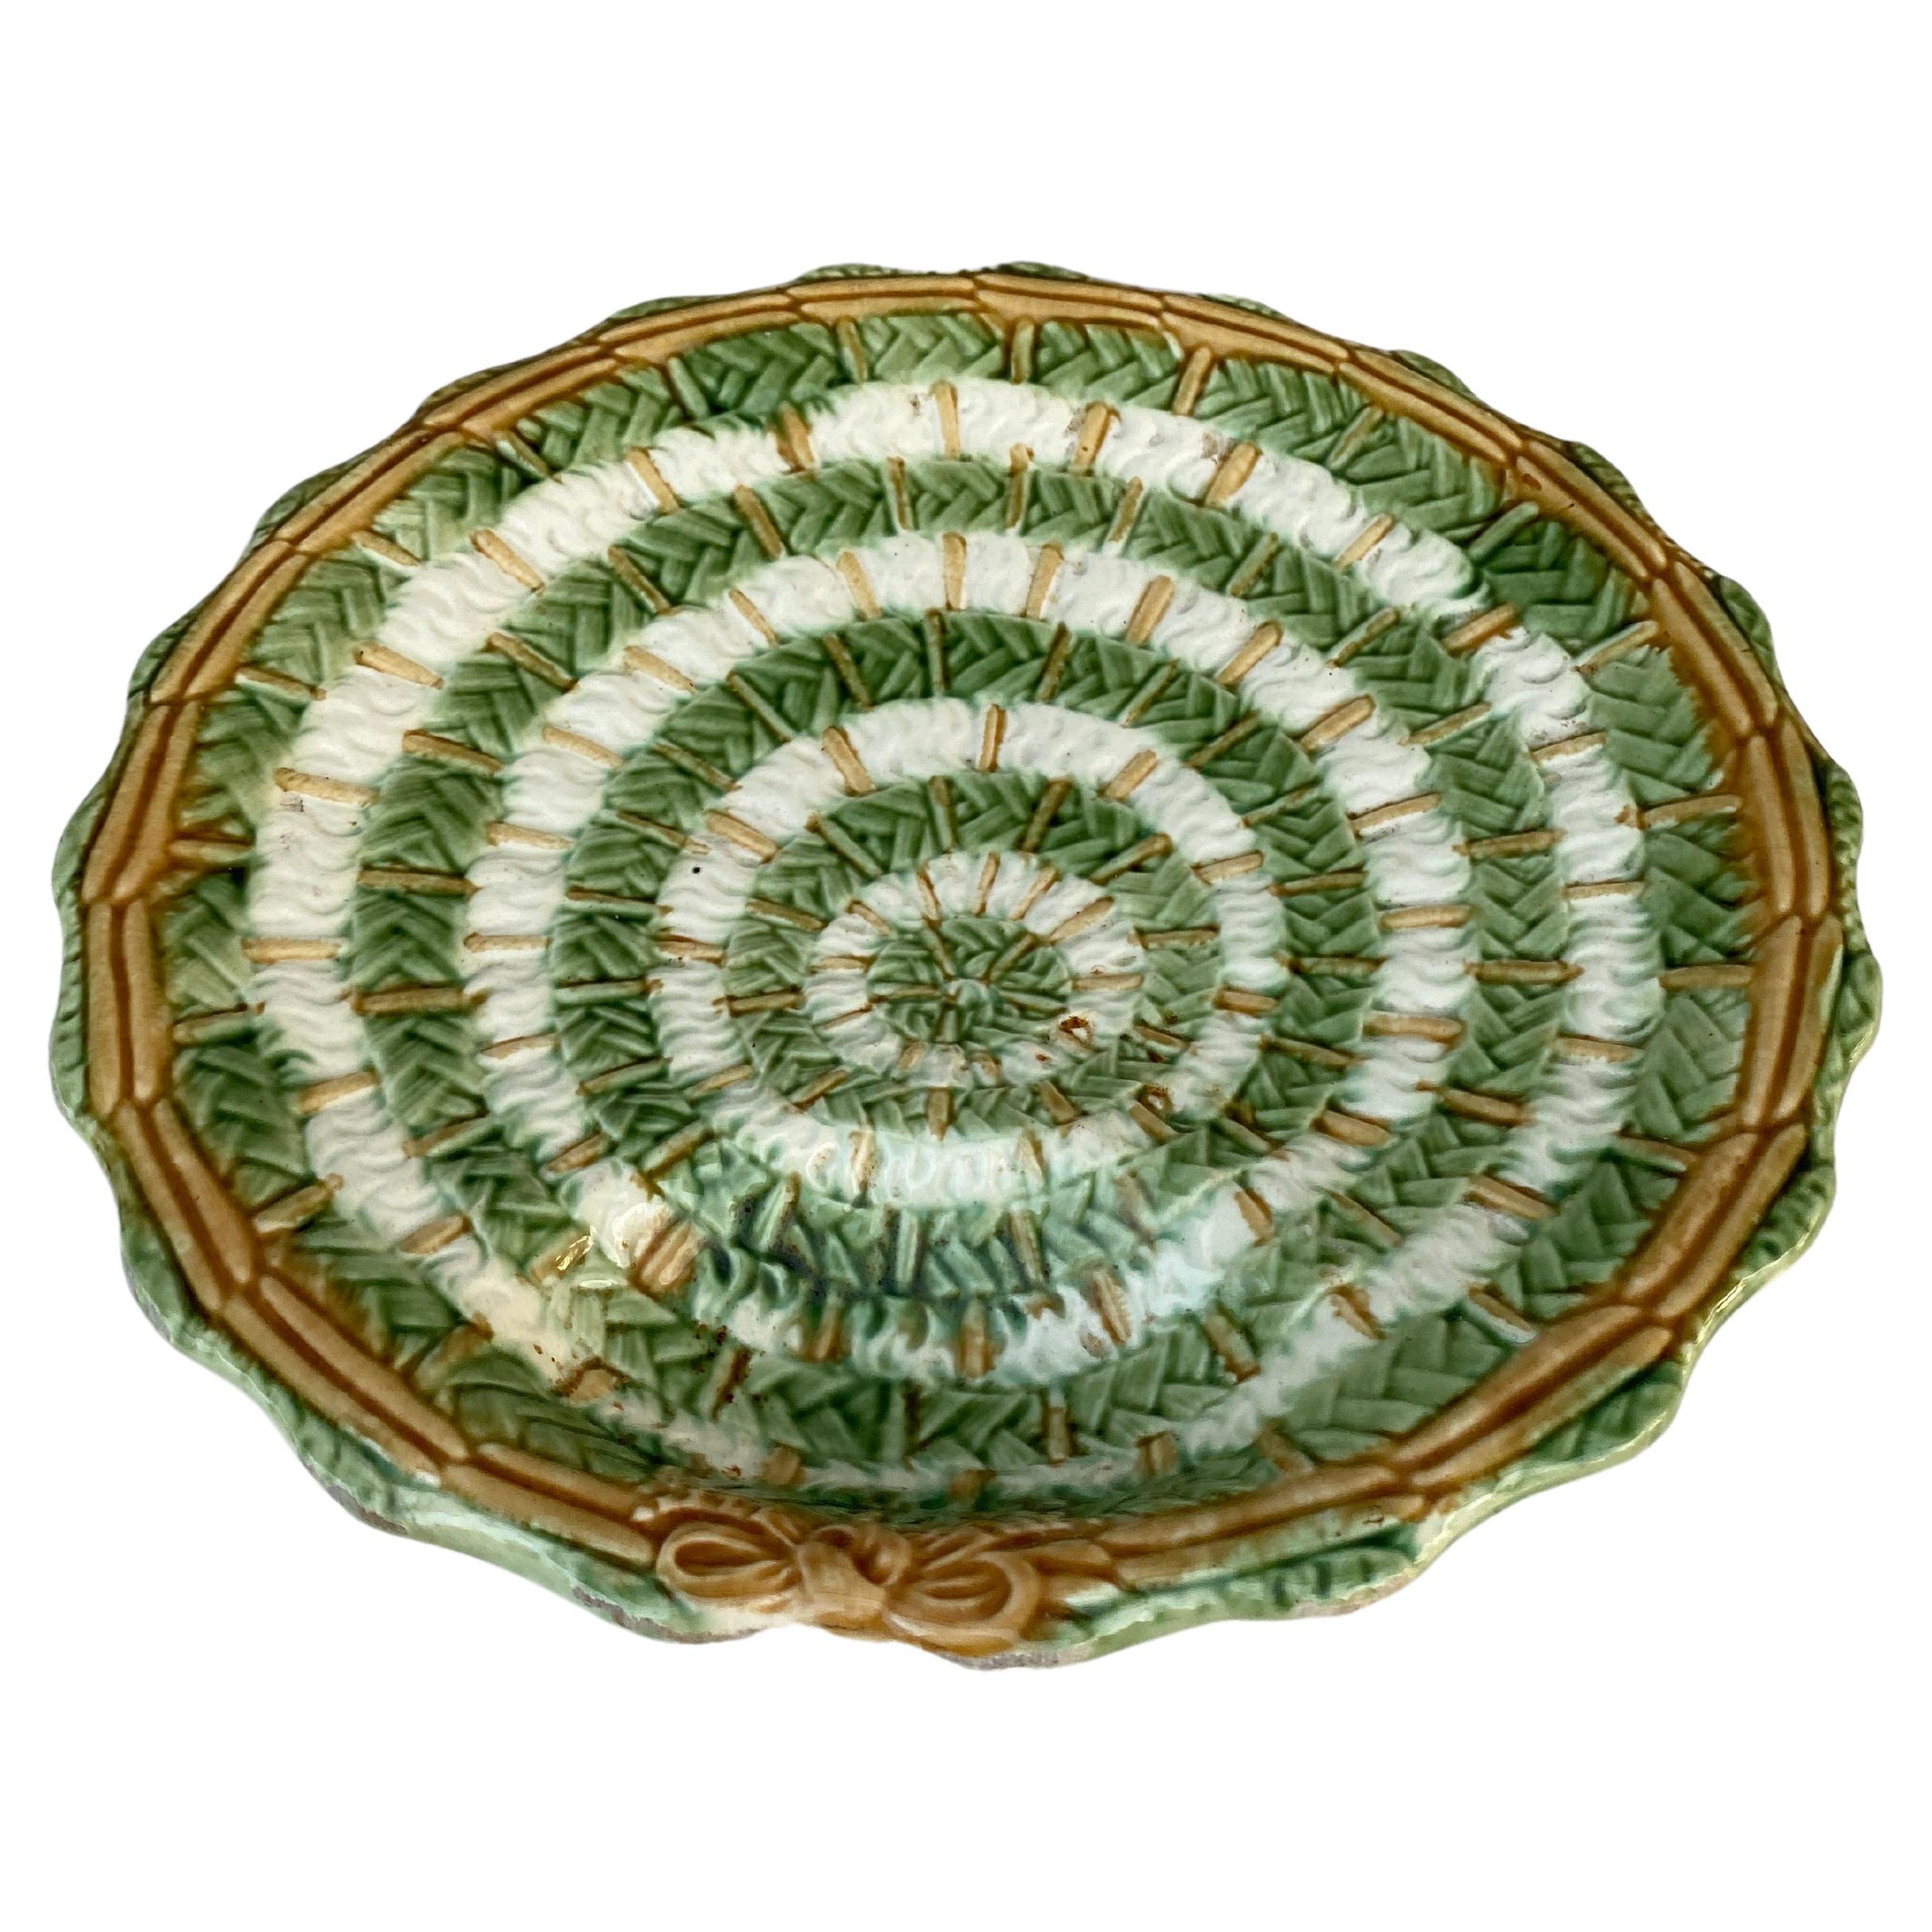 French Majolica asparagus plate circa 1890.
Rare model.
10